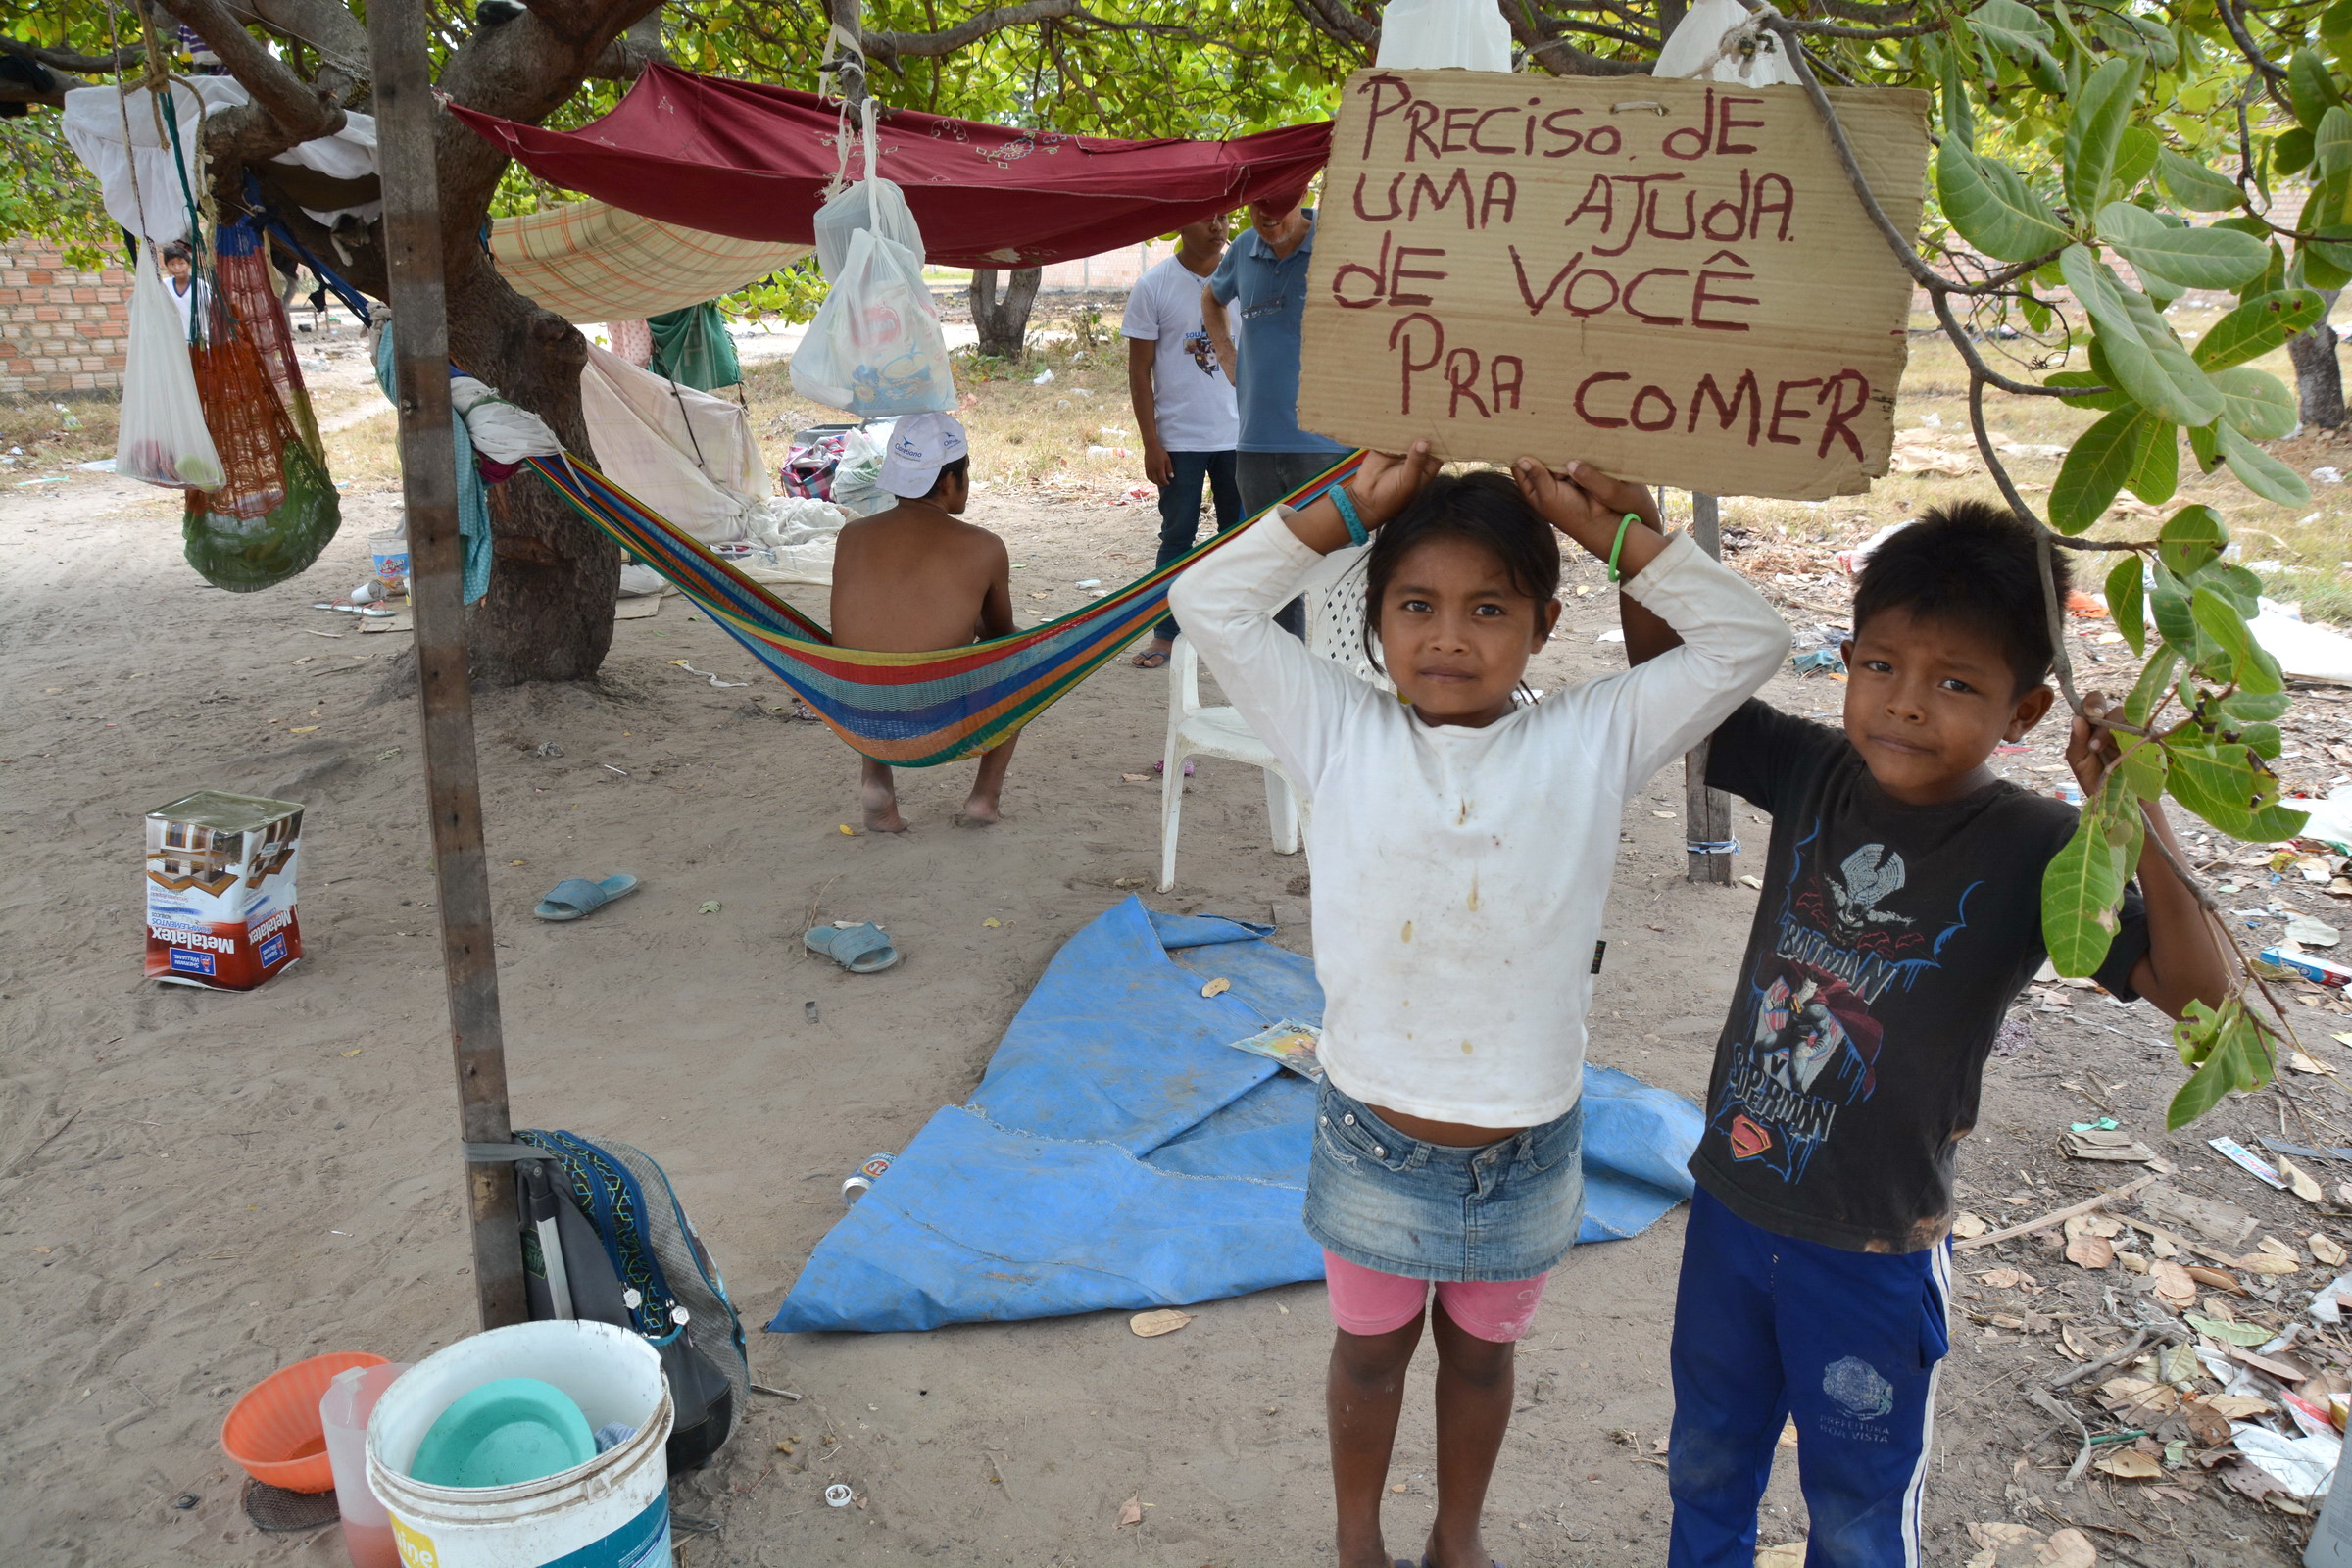 Um cajueiro se tornou a morada de indígenas Warao. Cartaz anuncia pedido de ajuda para comer